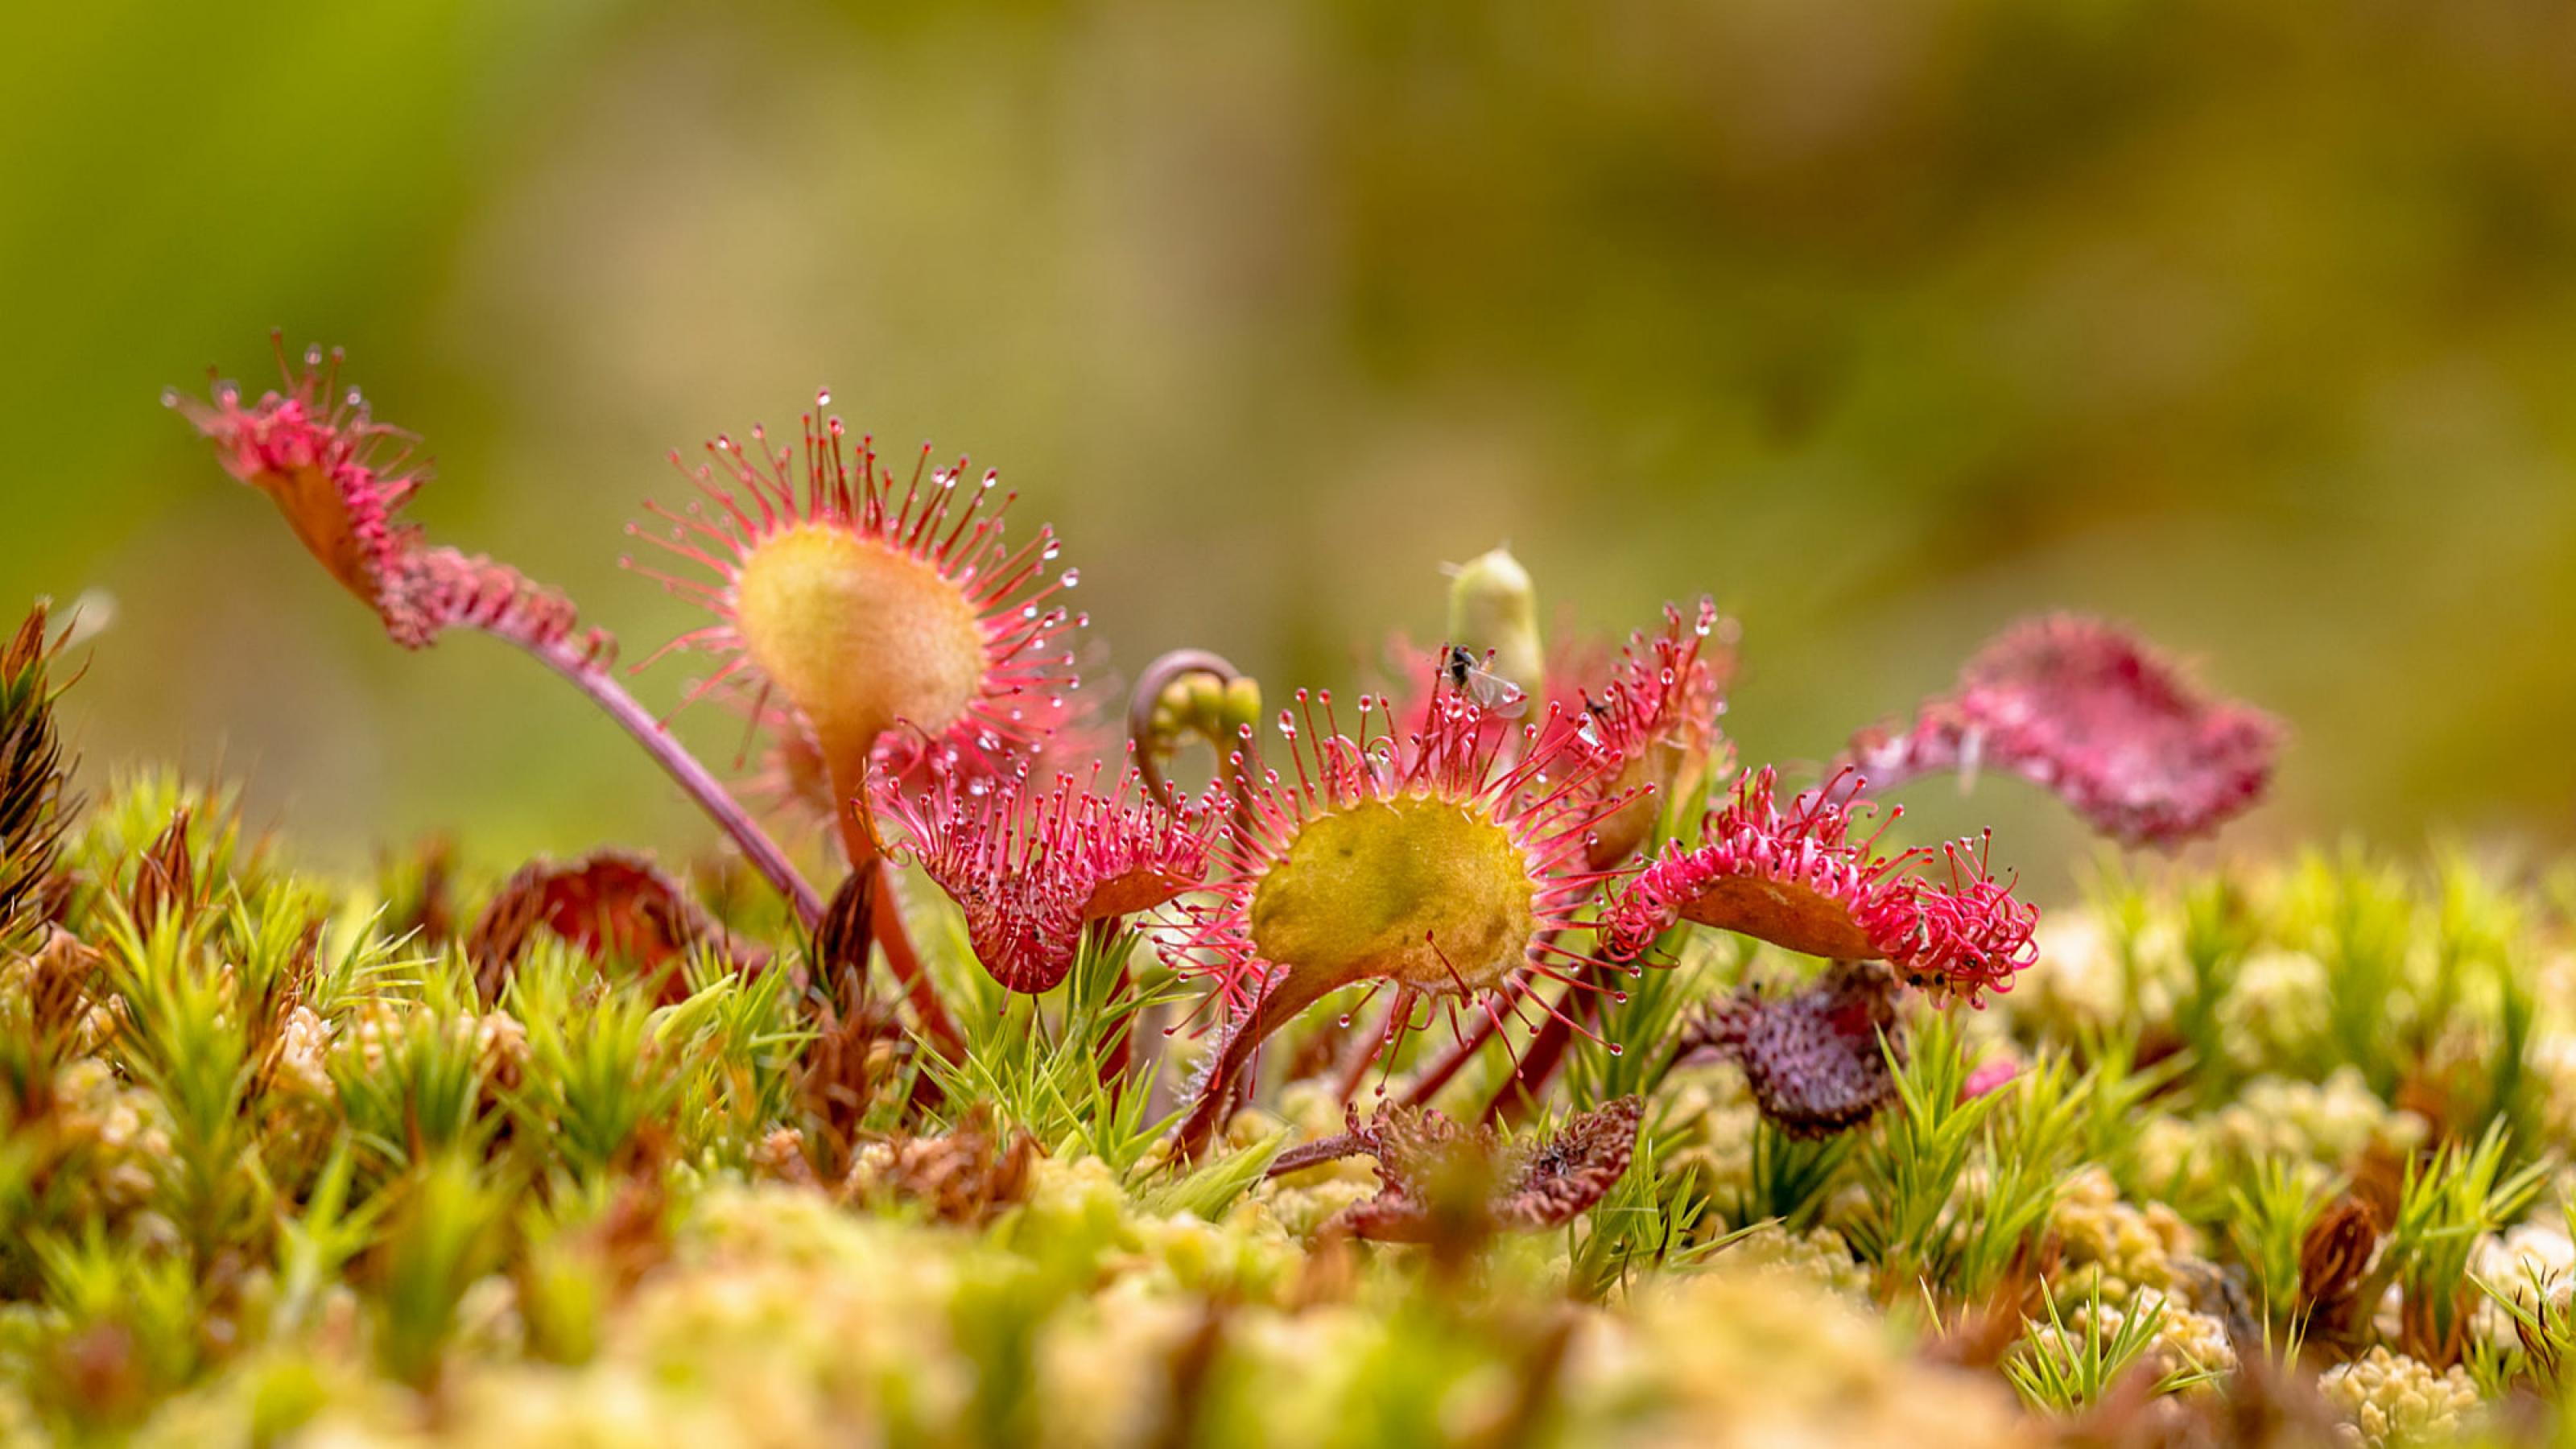 Ein rundblättriger Sonnentau mit roten Leimtentakeln wächst auf Moos  in einem Biotop in den Niederlanden.